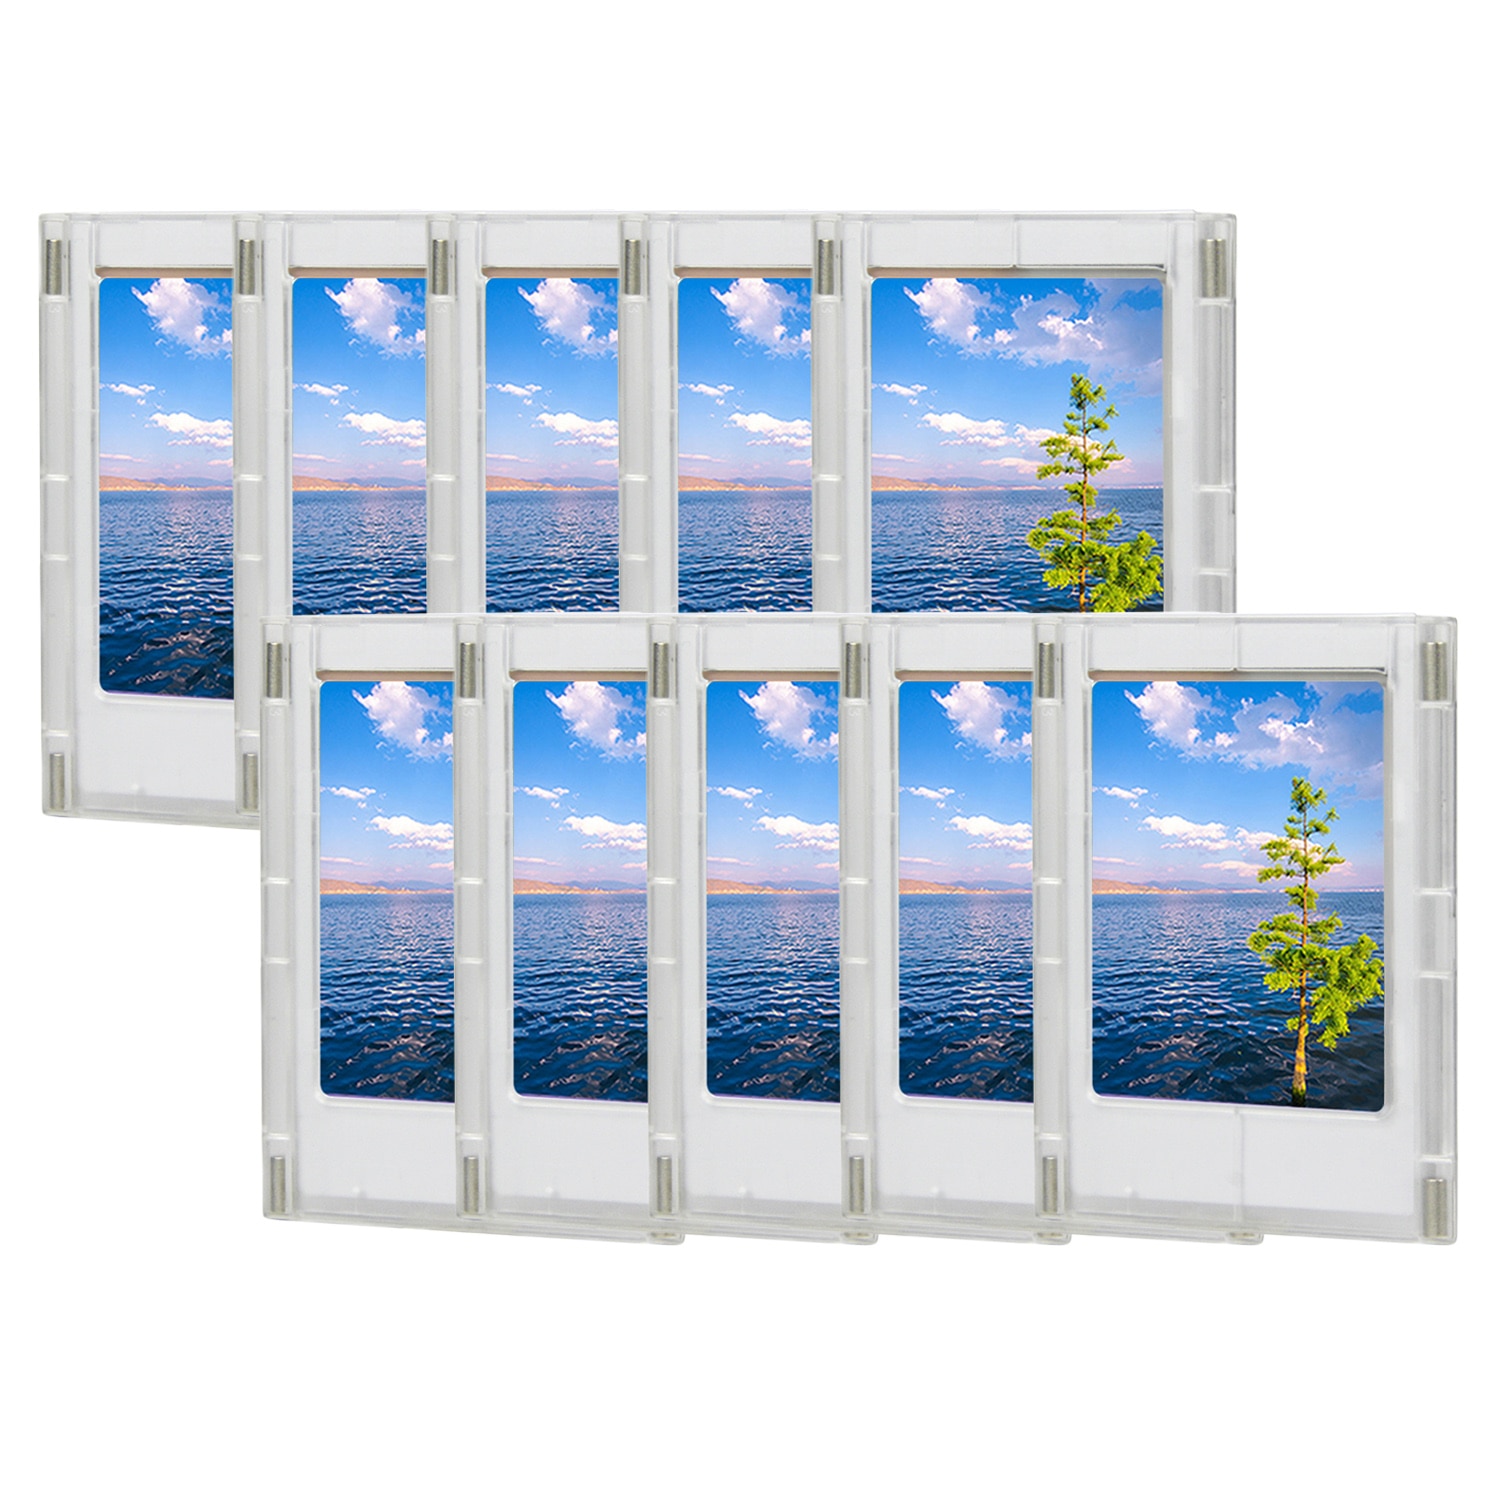 10 stk gratis kombination køleskabsmagnet magnetiske fotorammer til fujifilm instax mini 8 9 7s 70 90 3 tommer billeder